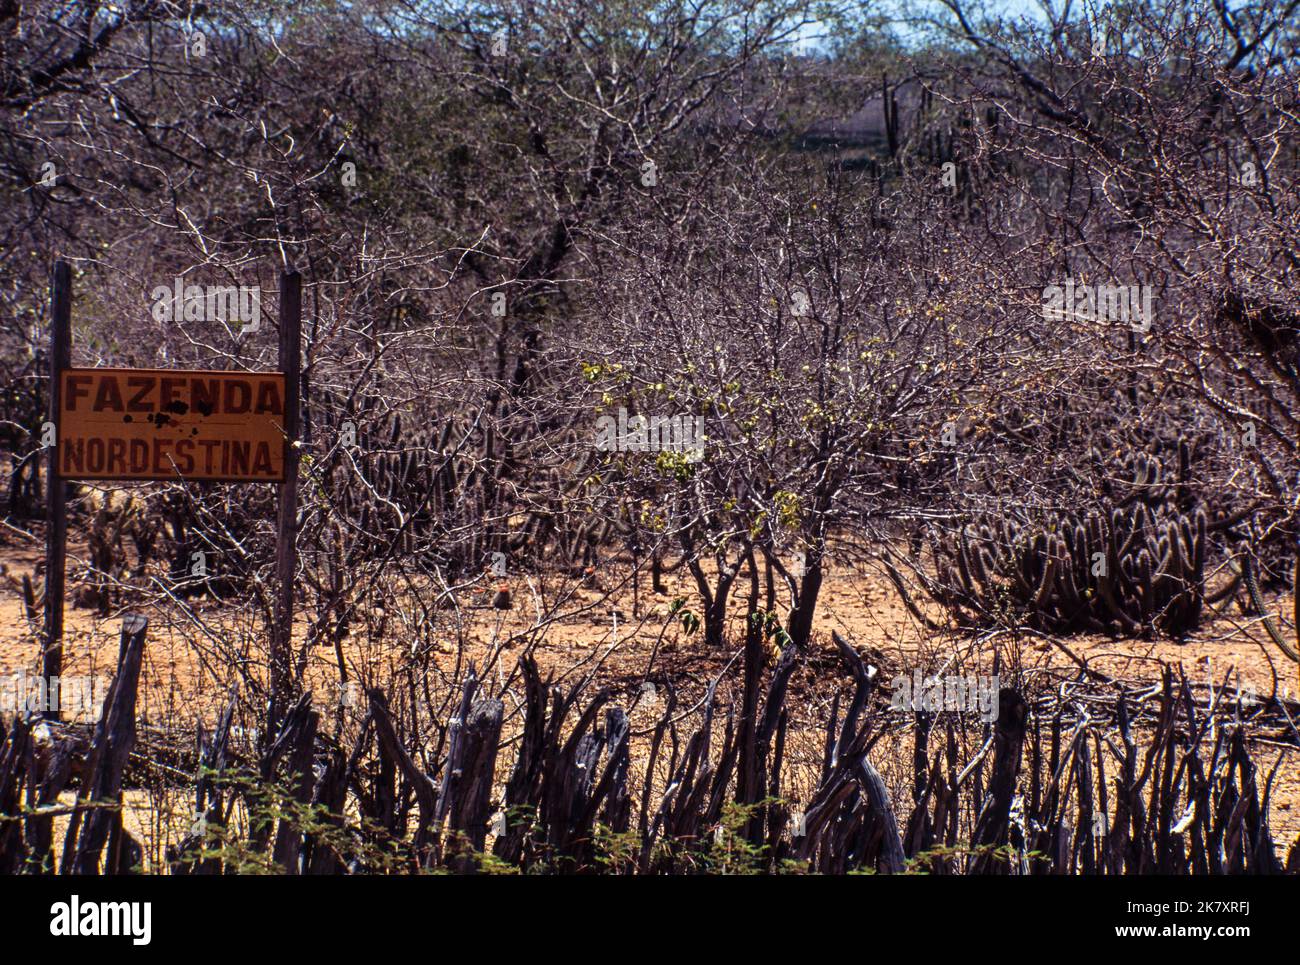 Caatinga Biom, ein halbarder Buschwald im Nordosten Brasiliens, der äußerst reich an natürlichen Ressourcen ist. Die Region ist eine der am stärksten bedrohten brasilianischen Naturlandschaften, und einige Gebiete leiden unter Wüstenbildung. Pernambuco Stockfoto